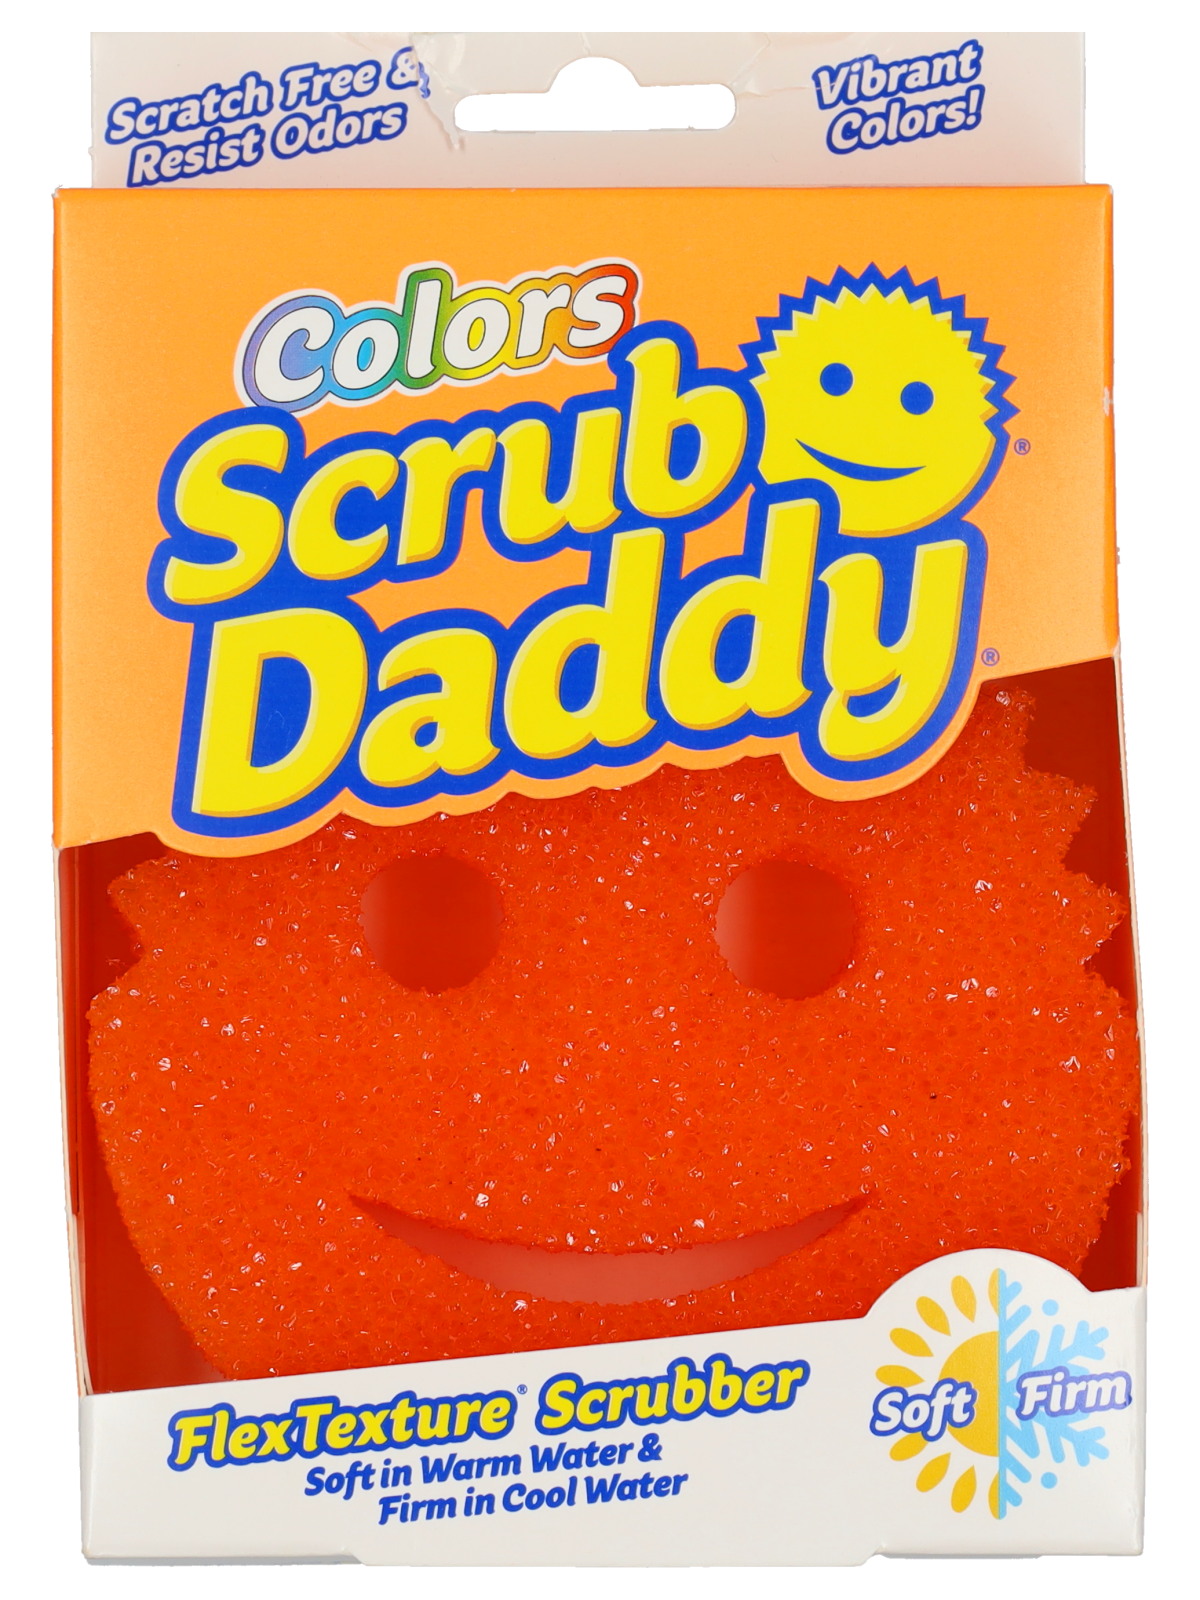 Scrub daddy orange - Wibra